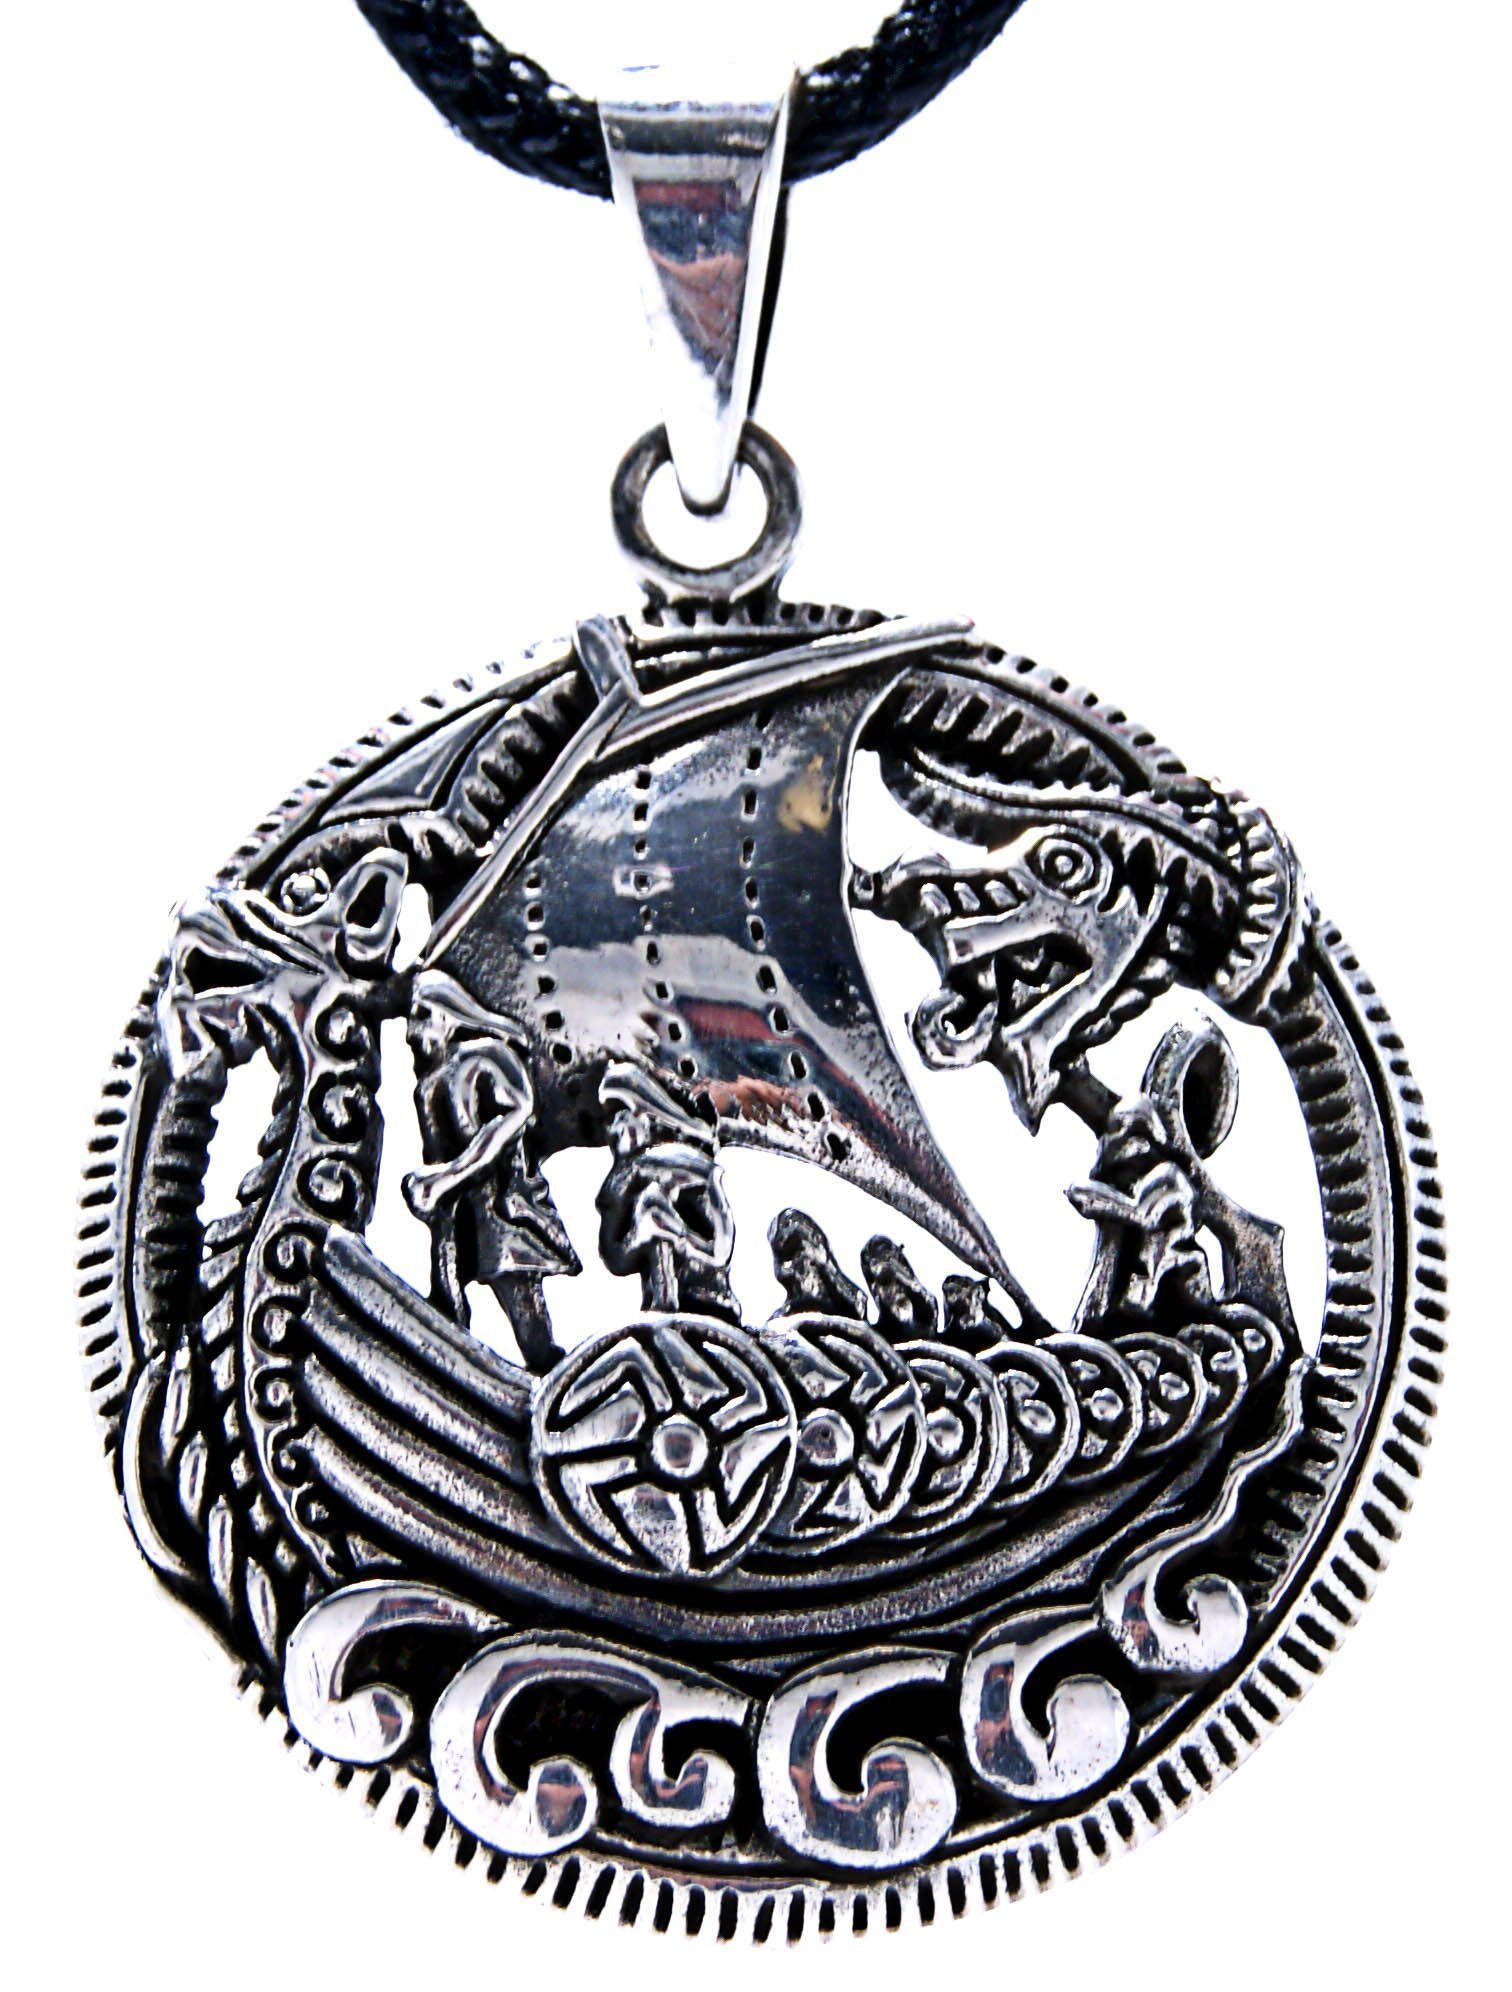 Midgardschlange Keltischer Knoten Anhänger Silber 925 Wikinger Schmuck b567-1 